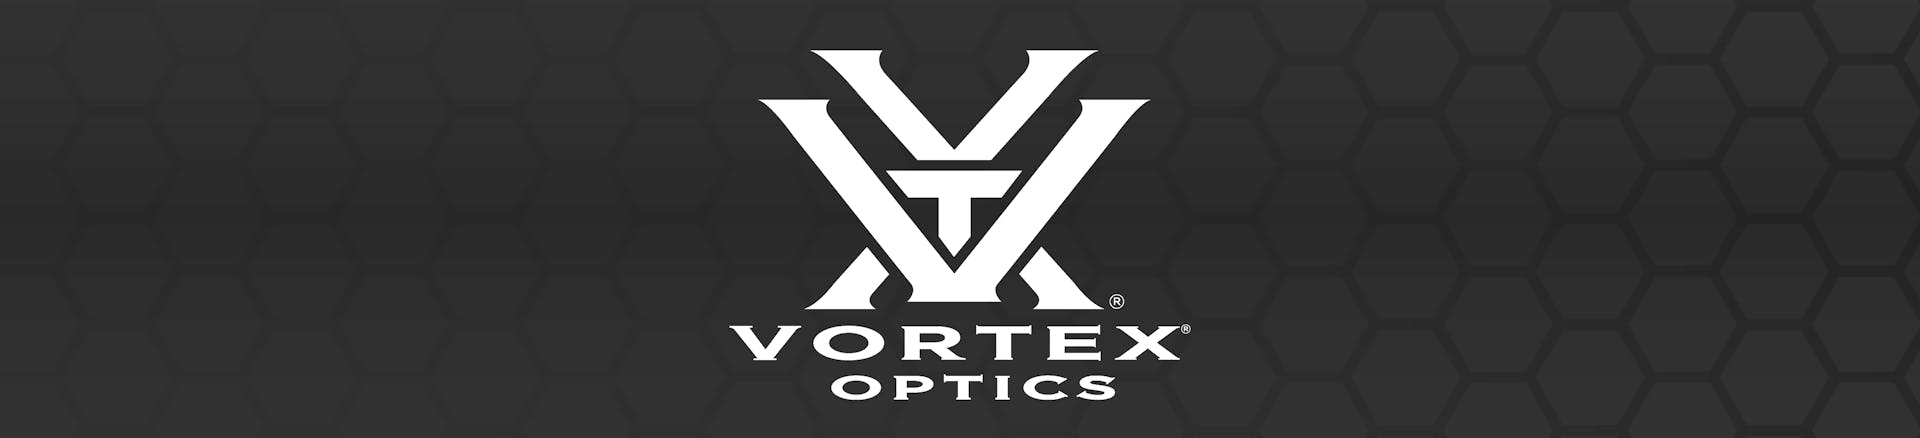 Brand Landing - Vortex